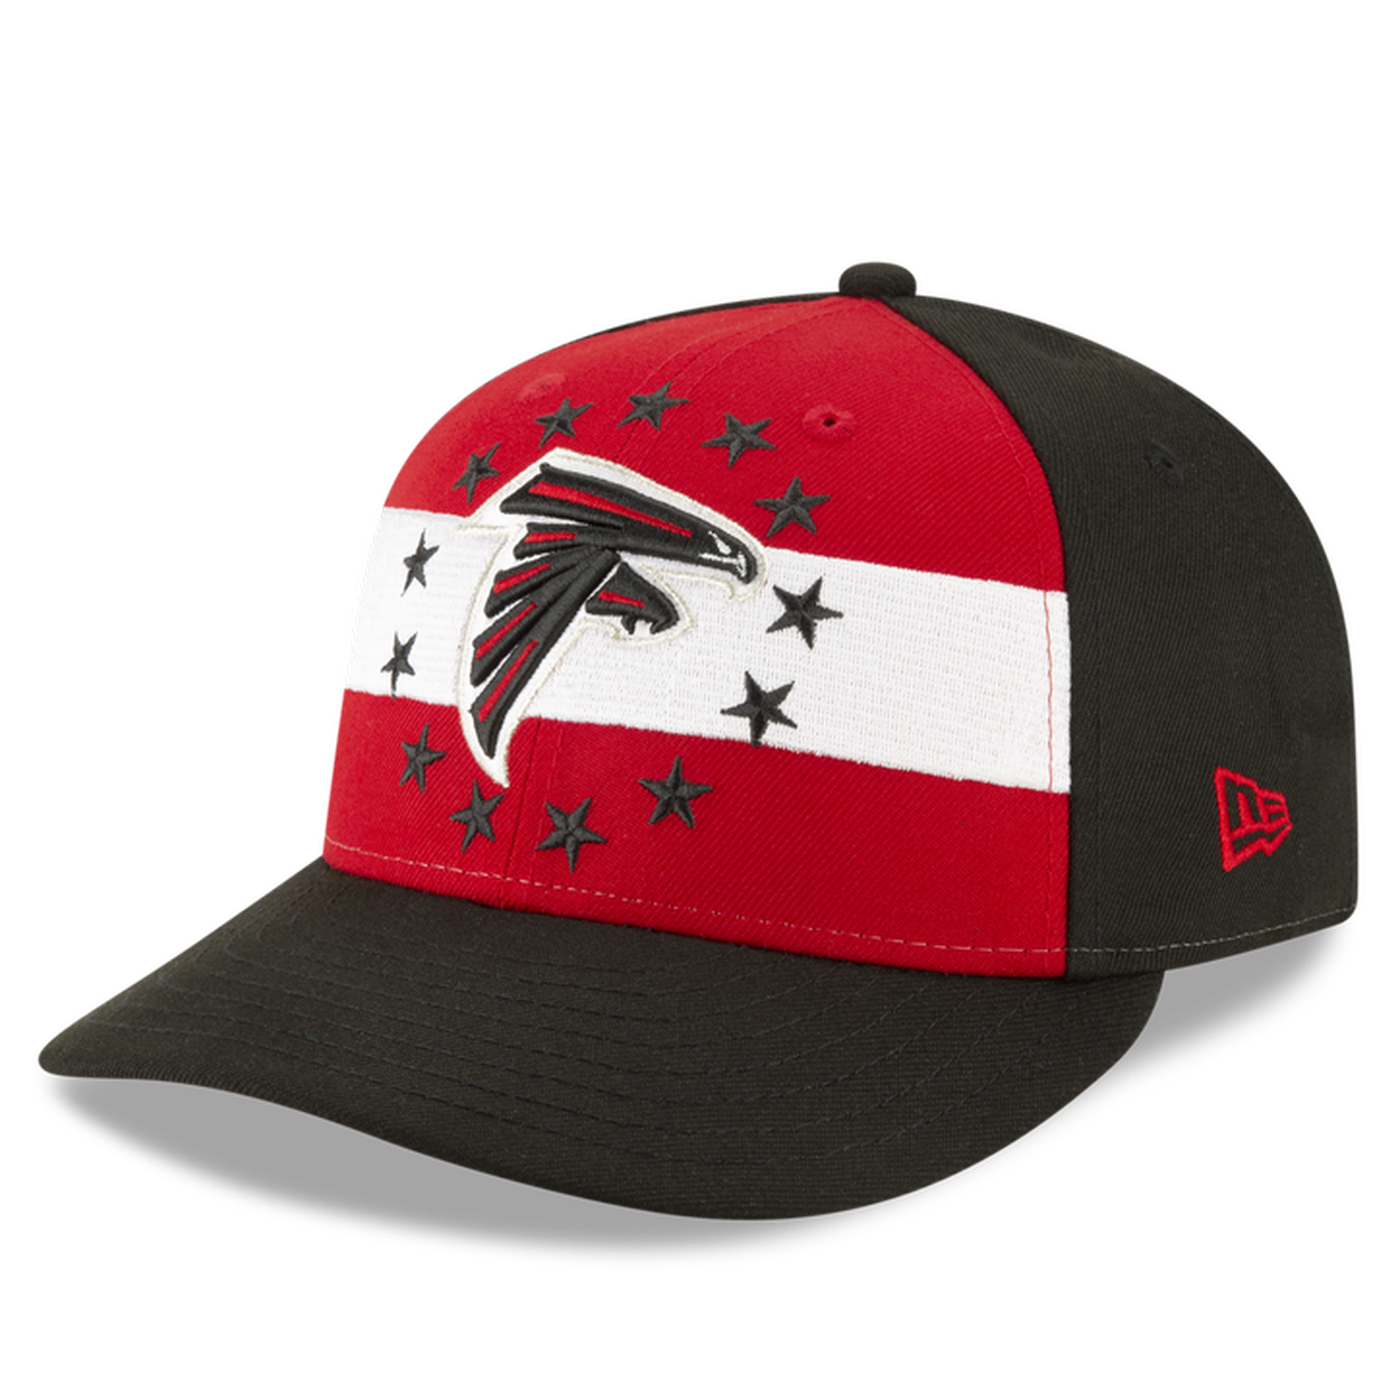 New Era Atlanta Falcons 9forty Adjustable cap Nfl19 Draft 